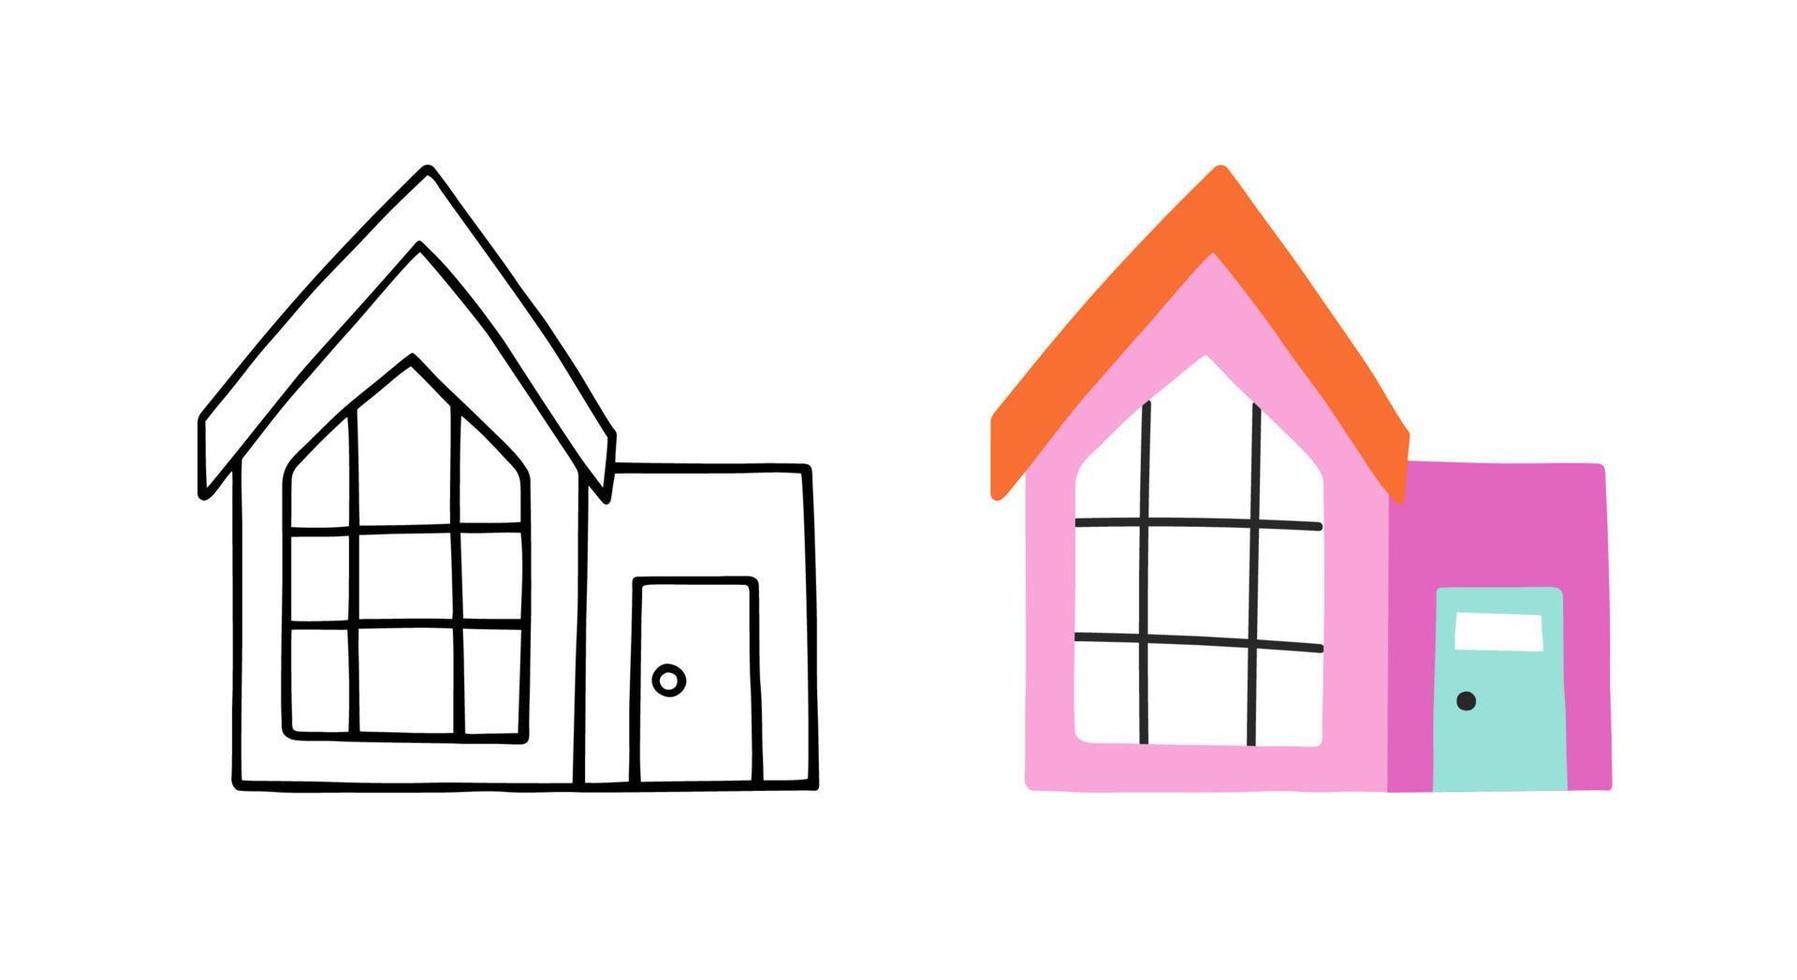 maison dans un style dessiné à la main. doodle croquis jolie maison. illustration vectorielle plane. vecteur